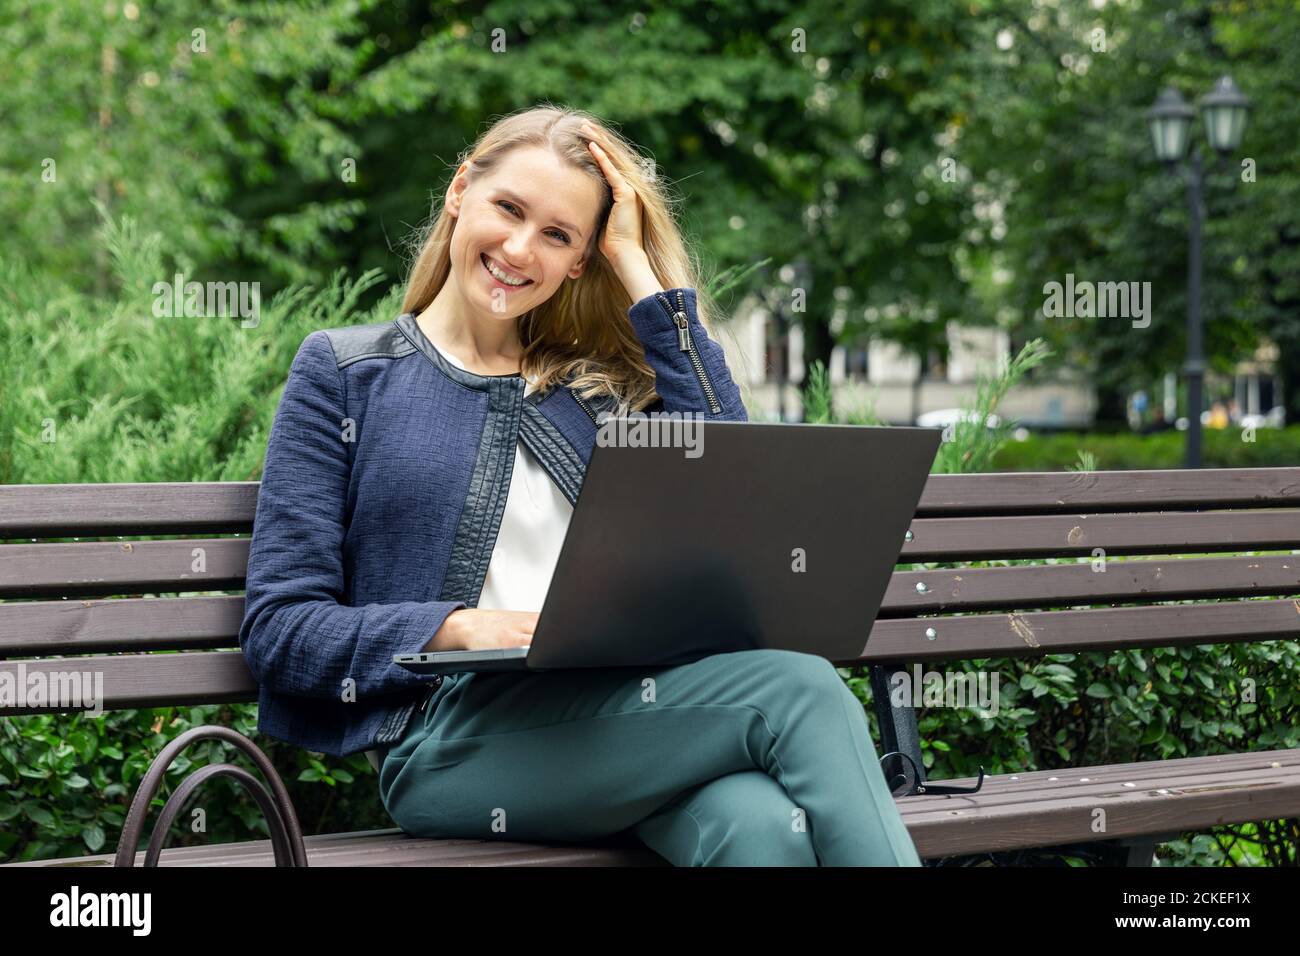 giovane bella donna sorridente che si rilassa sulla panchina nel parco cittadino con computer portatile Foto Stock